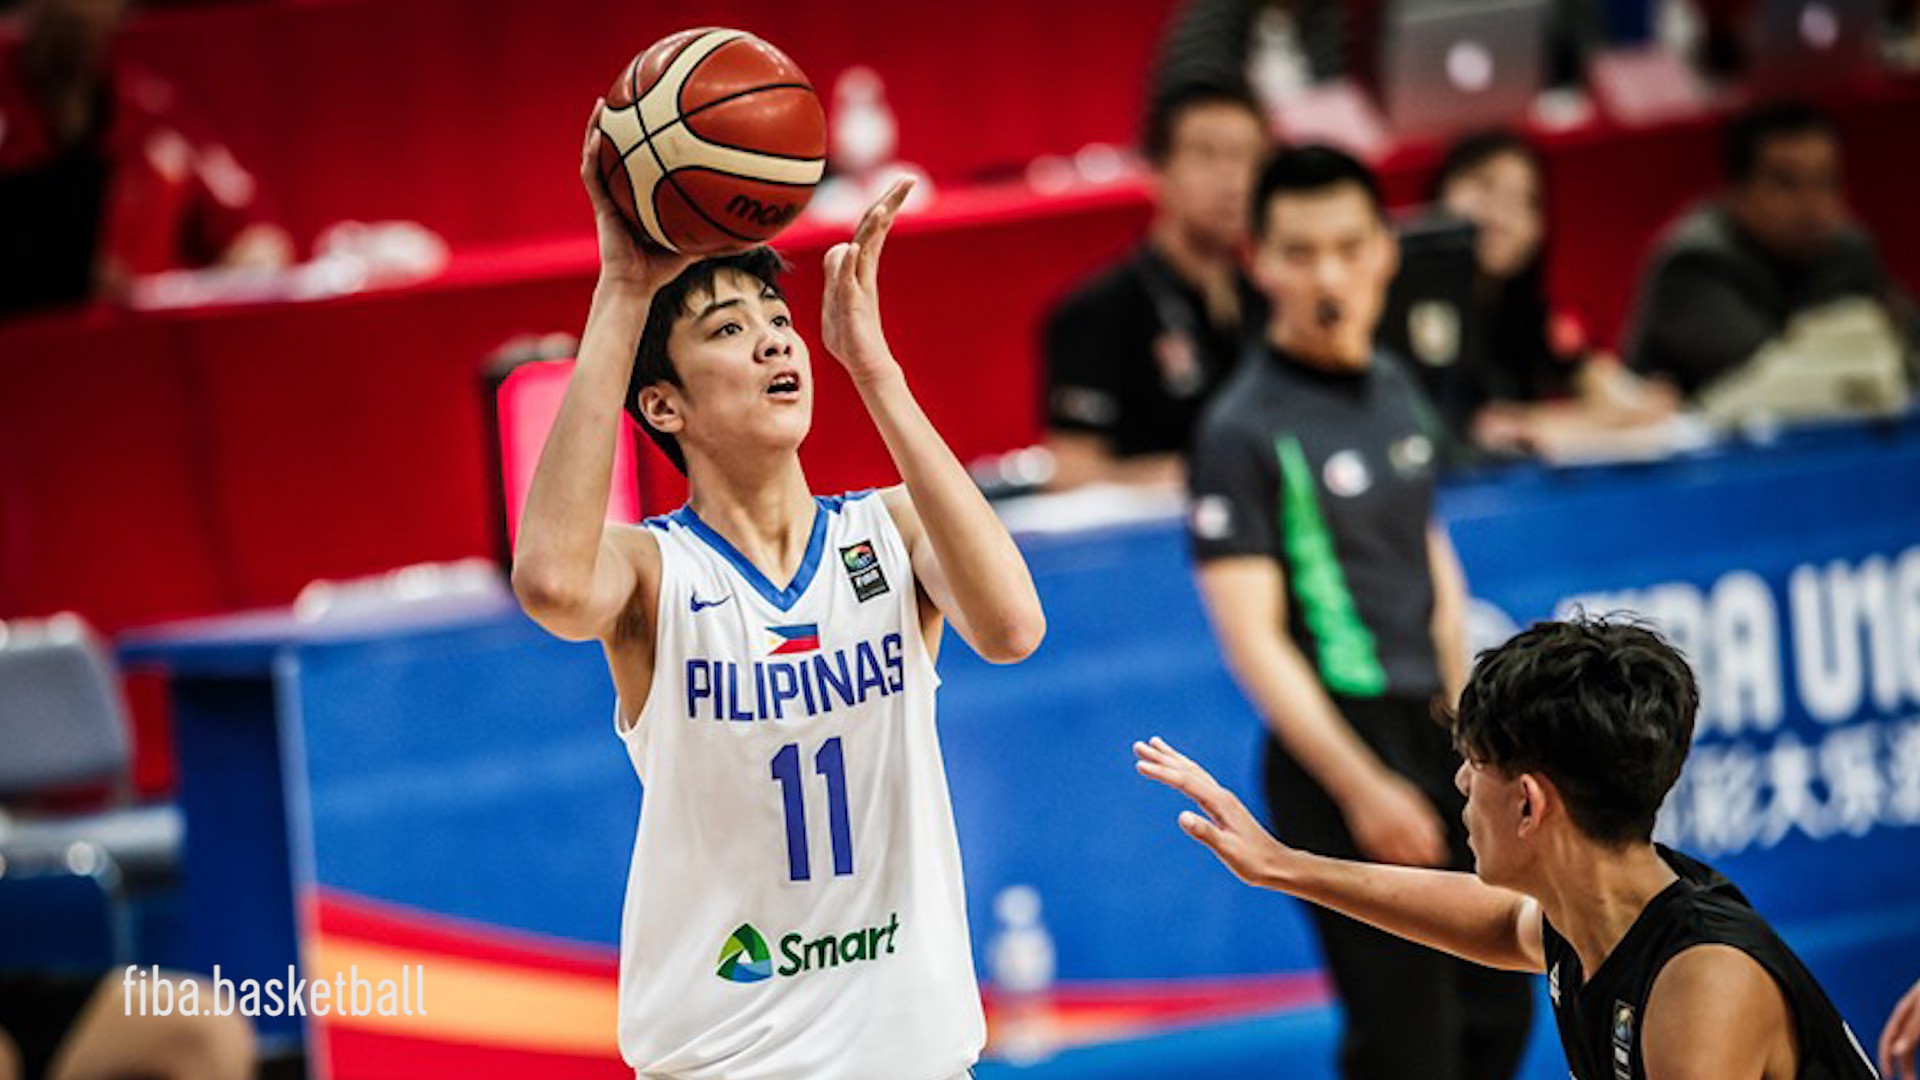 Mới 16 tuổi, thần đồng bóng rổ Philippines Kai Sotto đã được chọn vào đội hình lớn tham dự FIBA World Cup - Ảnh 2.